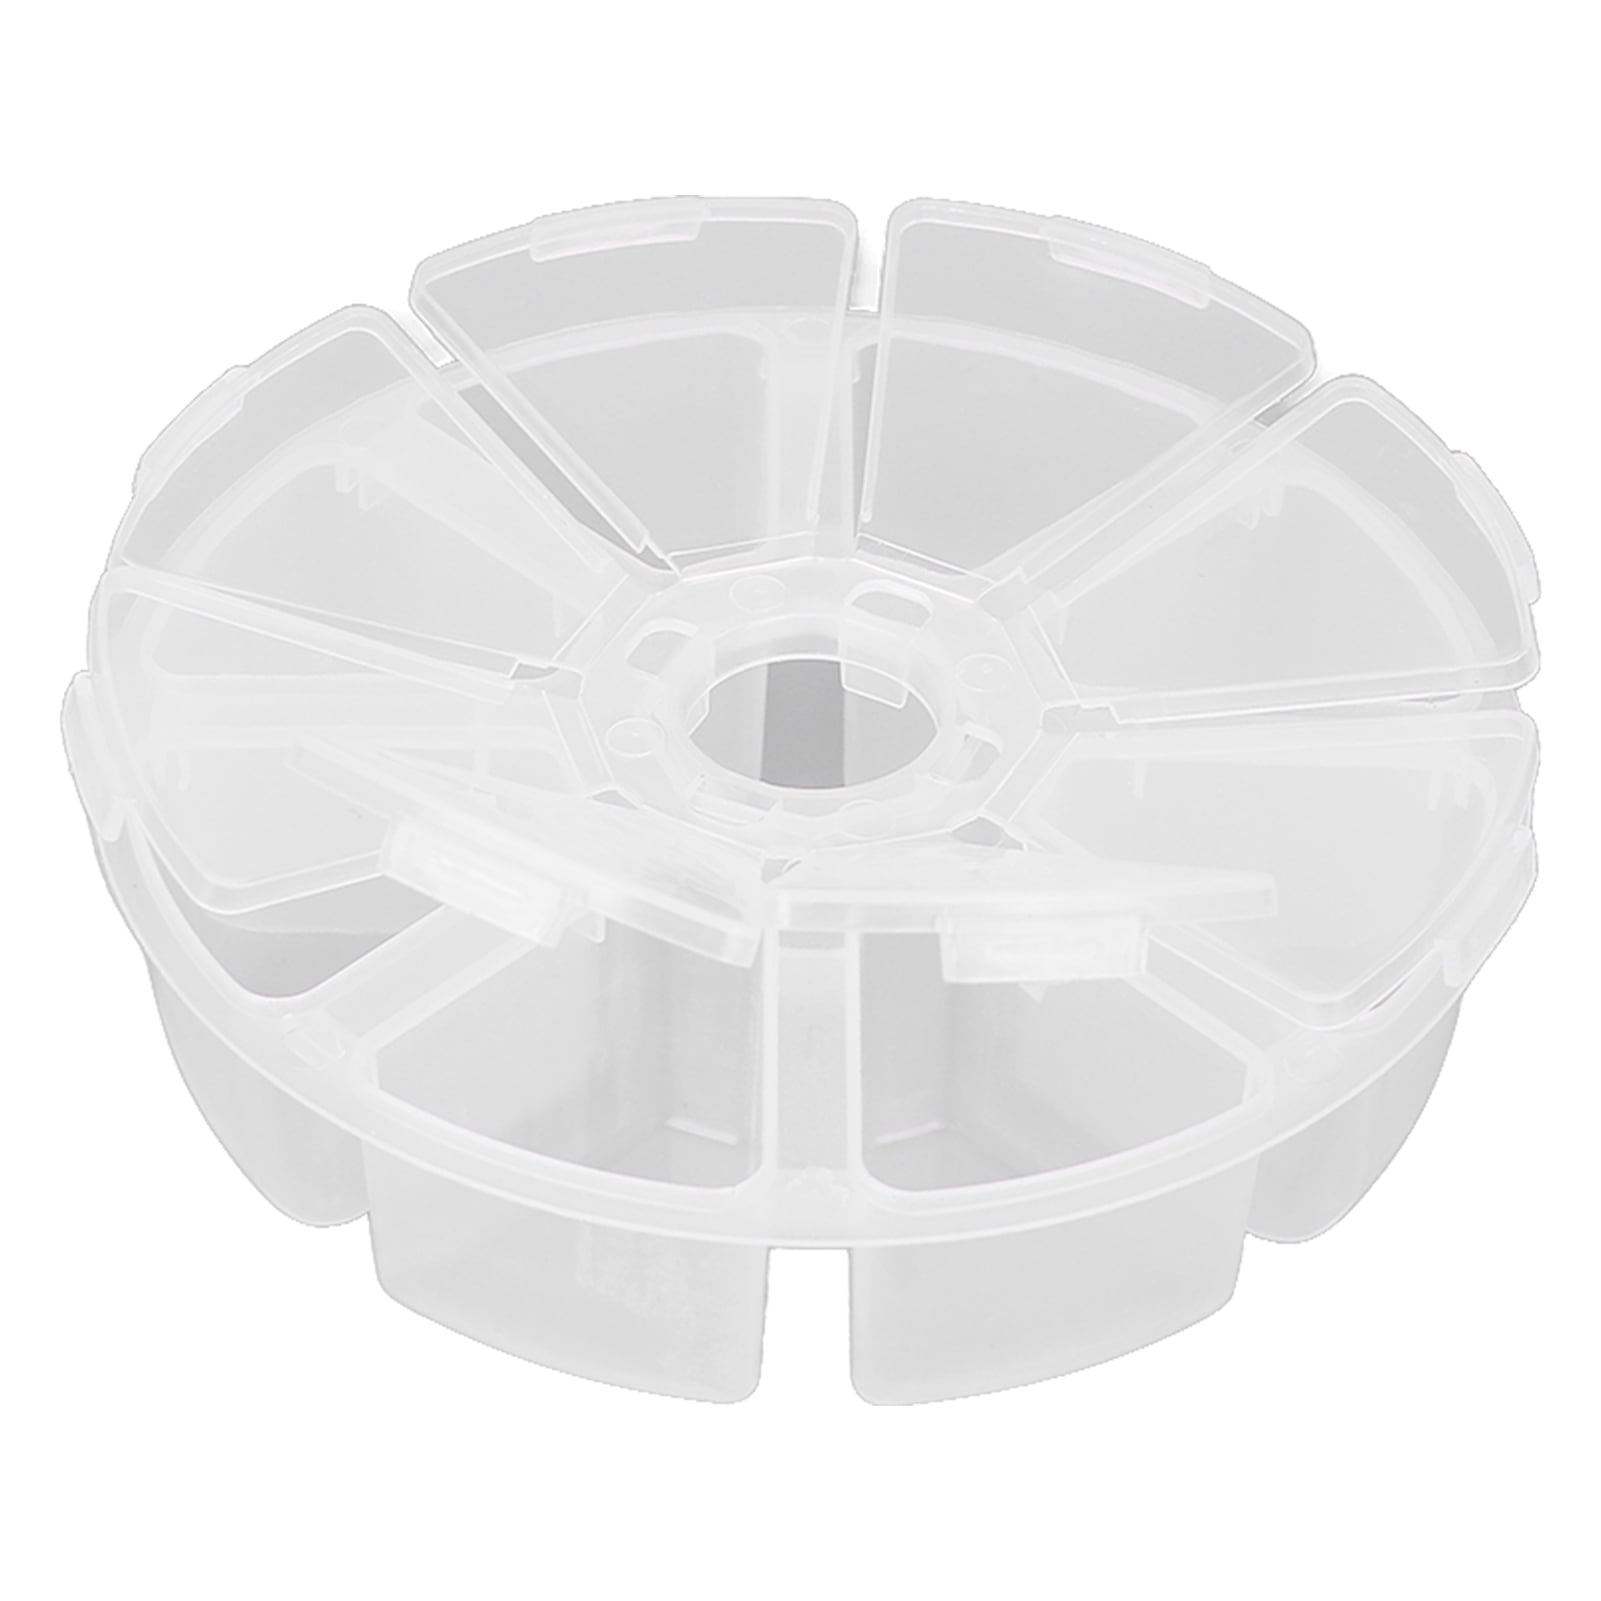 10pcs Round Transparent Plastic Storage Box Case Clay Bead Organizer  Container